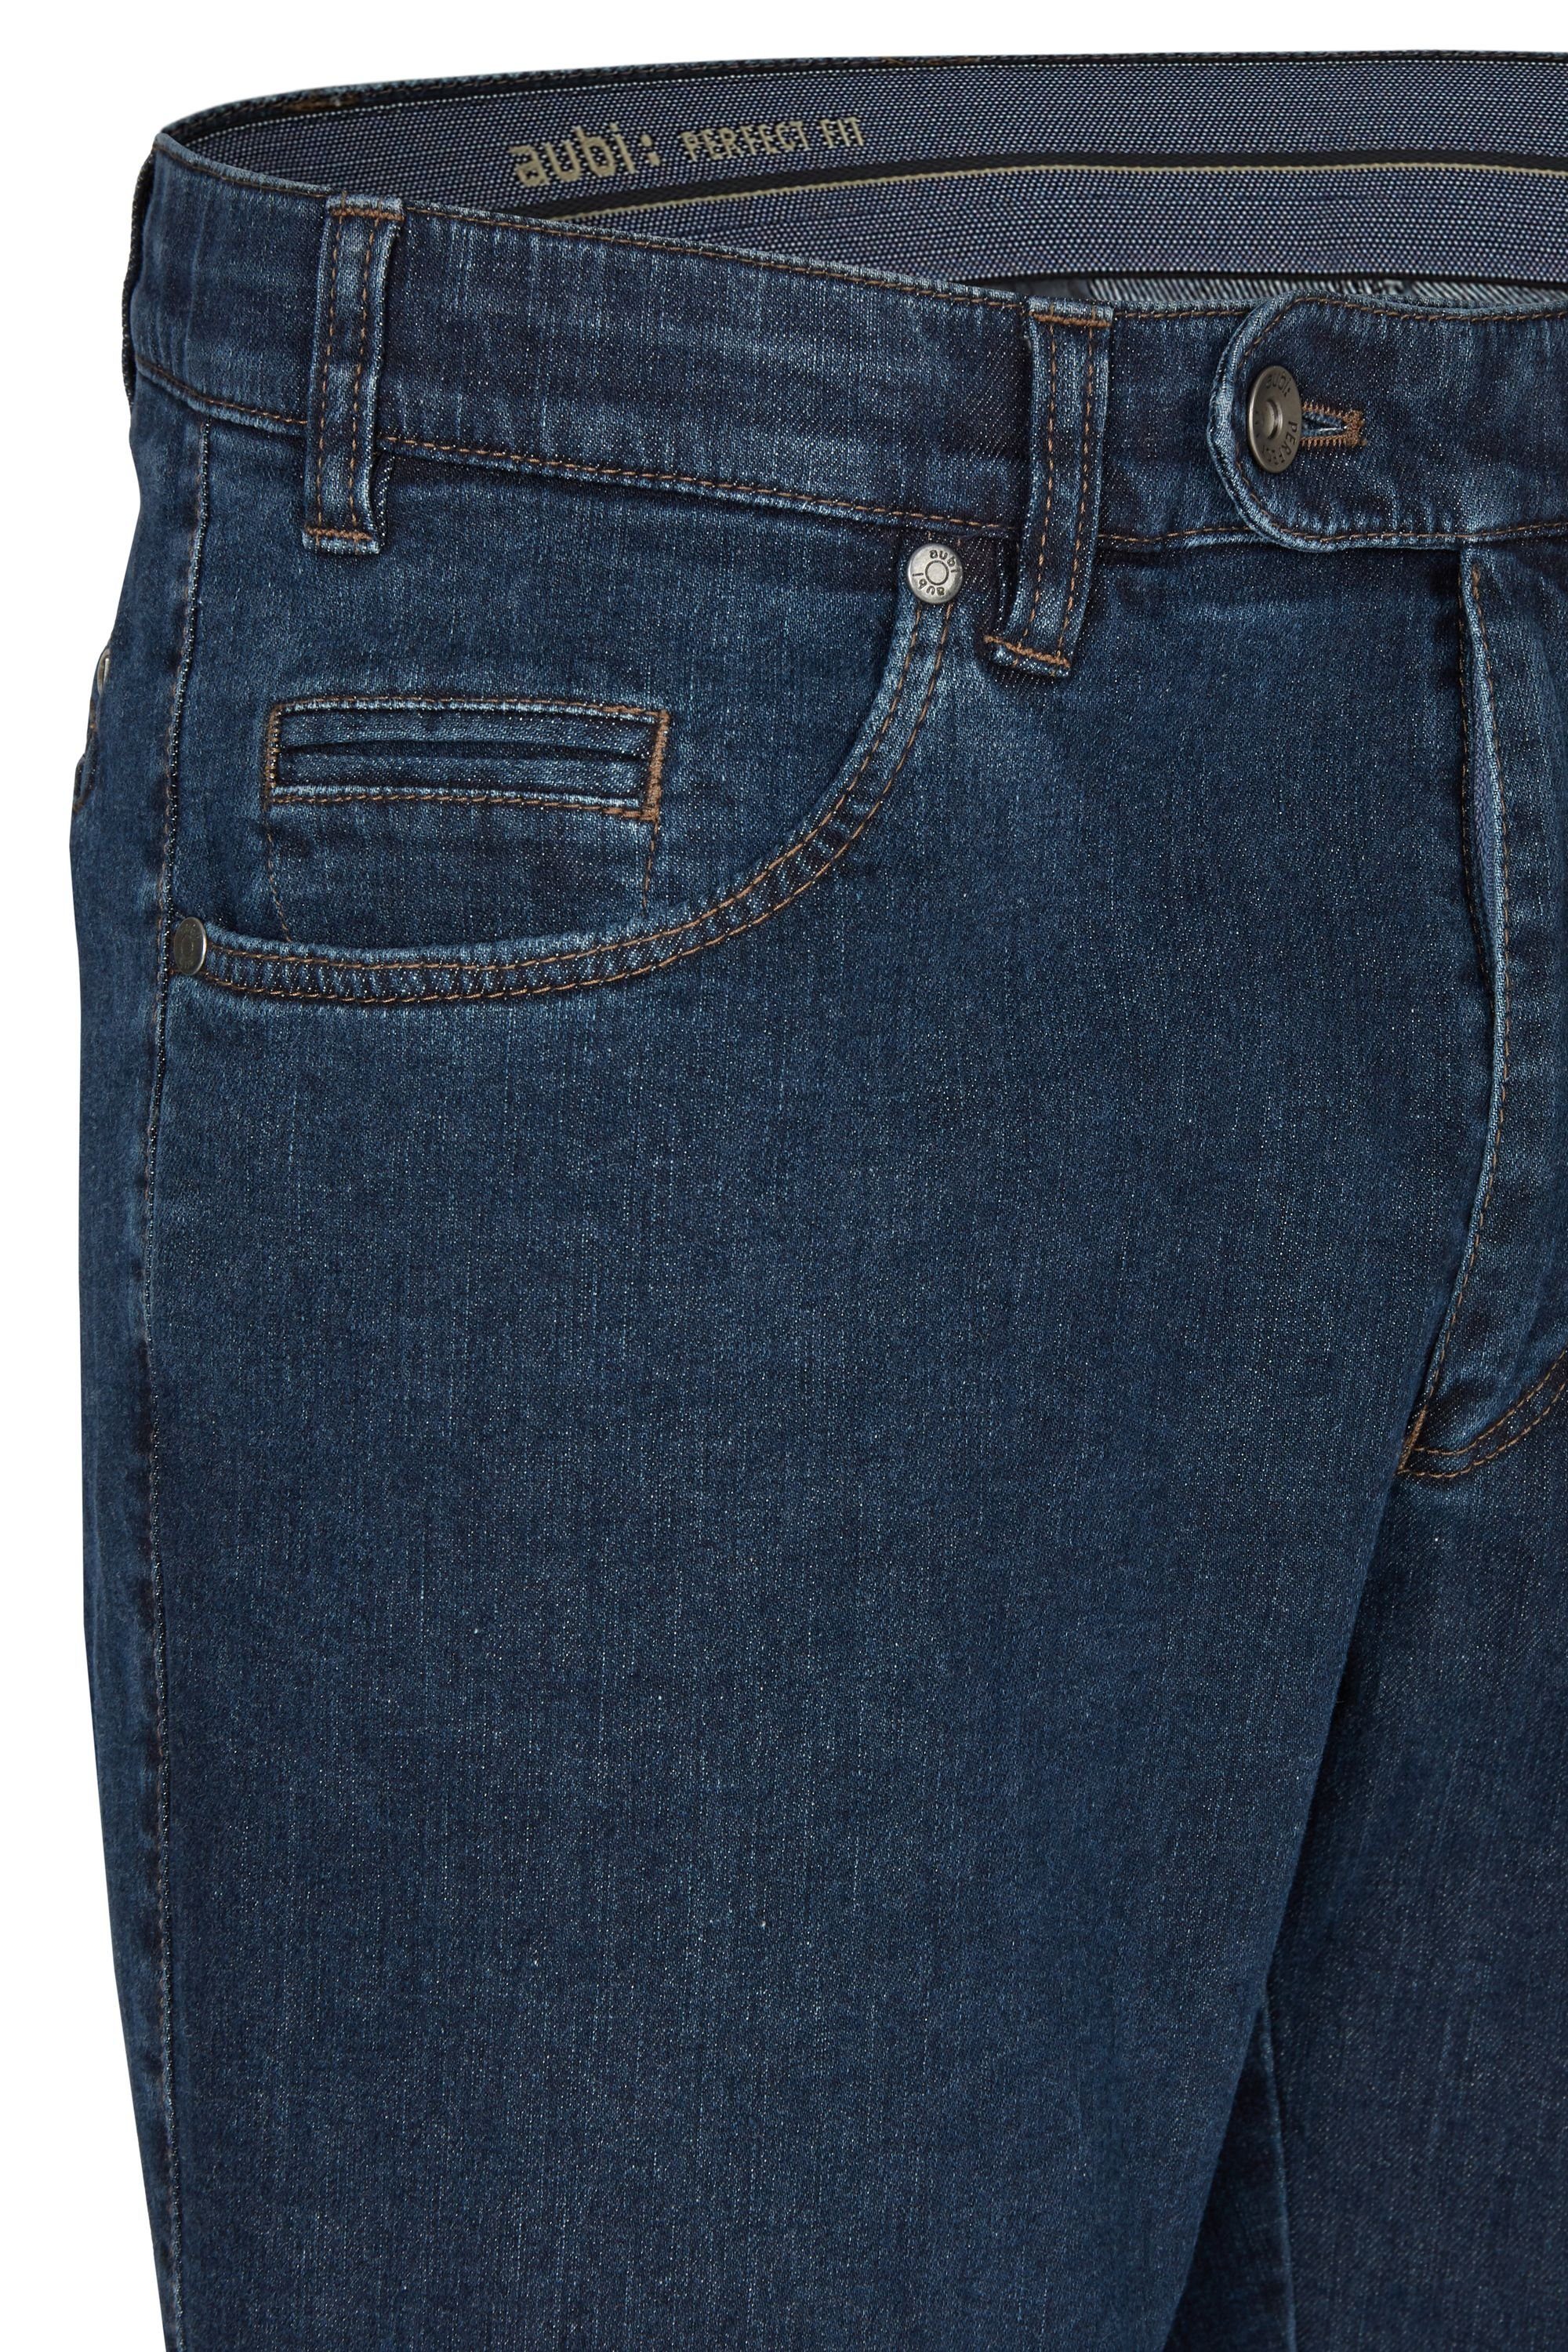 aubi: Bequeme Jeans aubi Flex Herren Stretch Perfect Baumwolle Jeans Fit aus stone High (46) Hose Modell 577